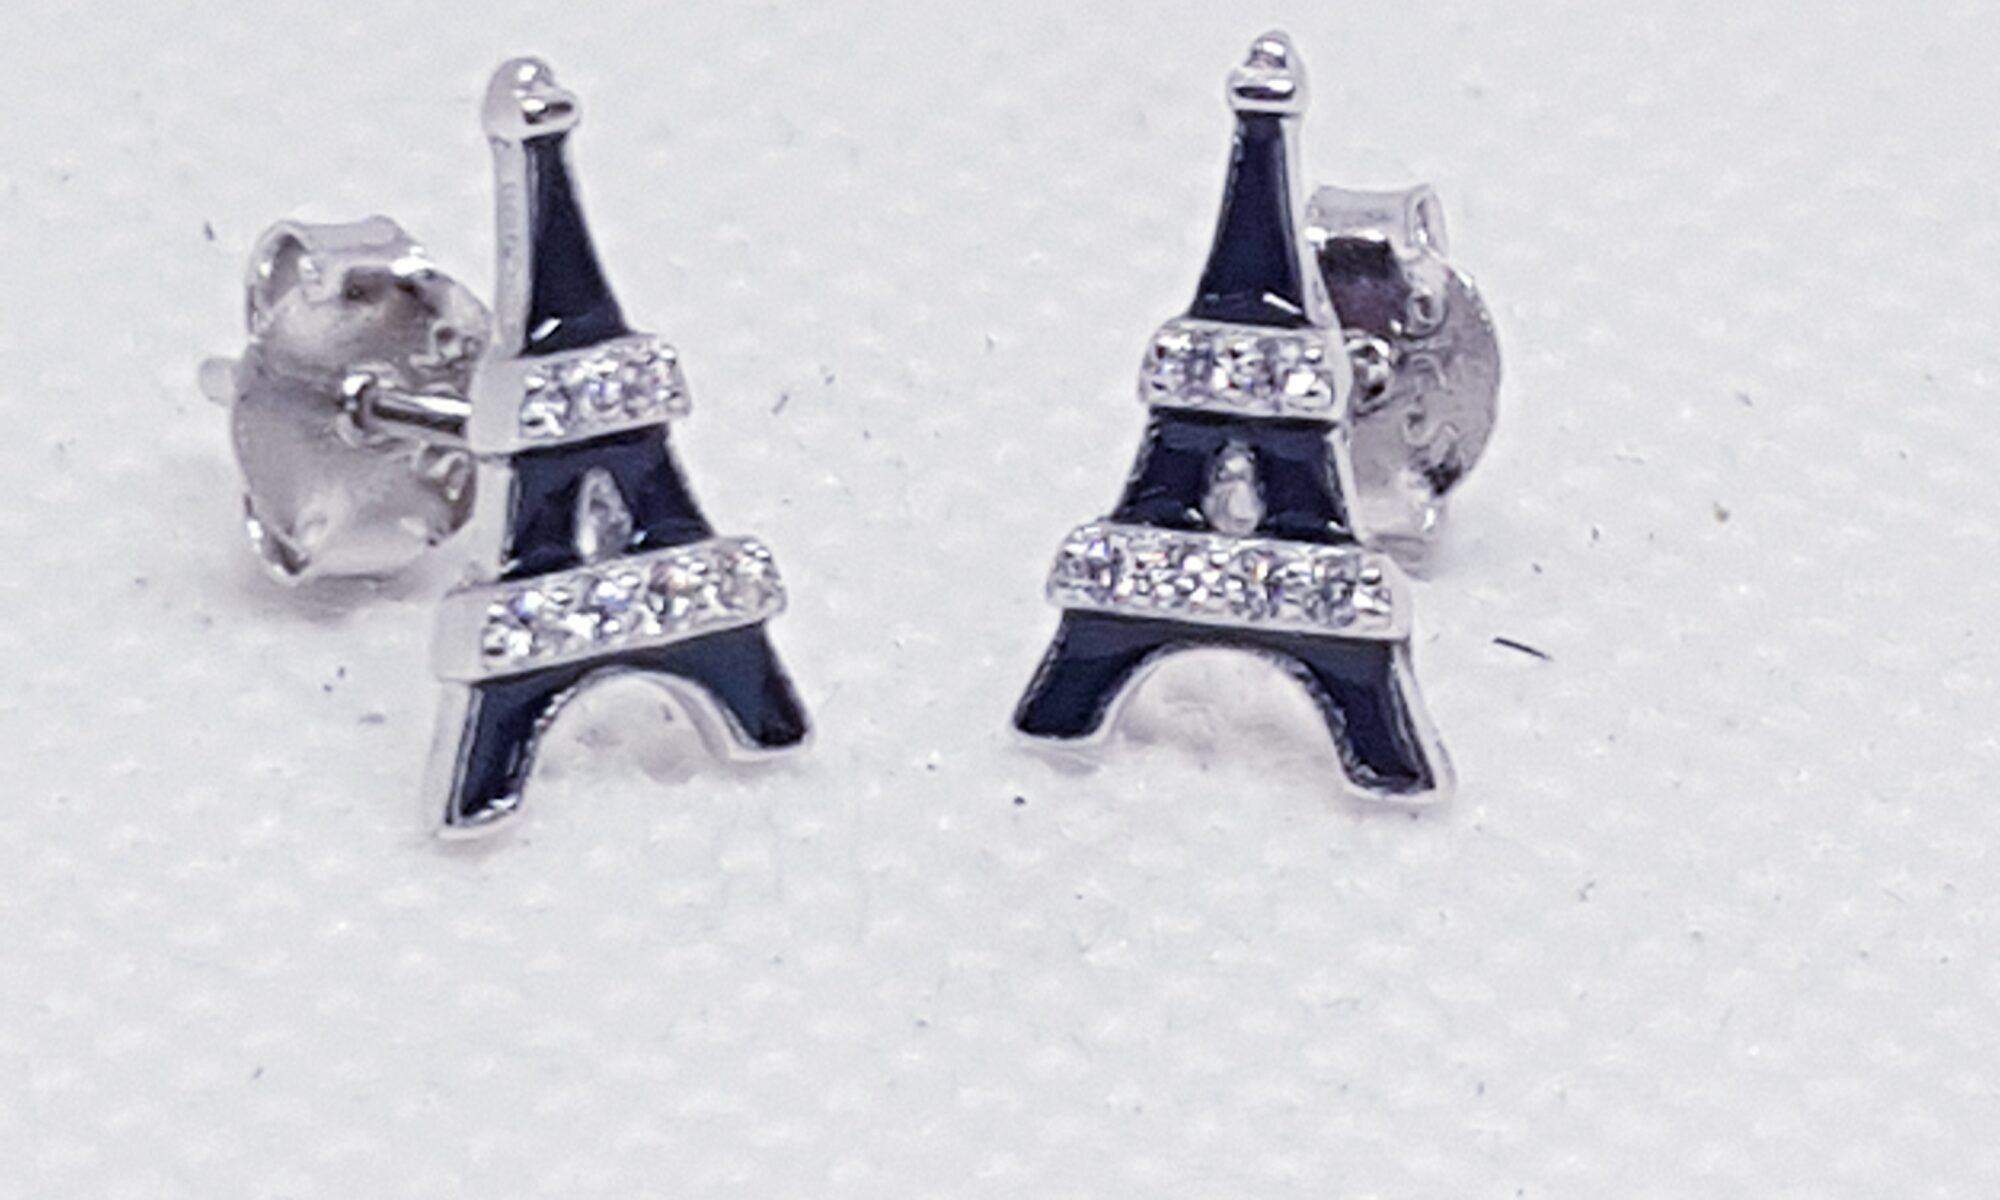 Orecchini Argento Torre Eiffel eden gioielli